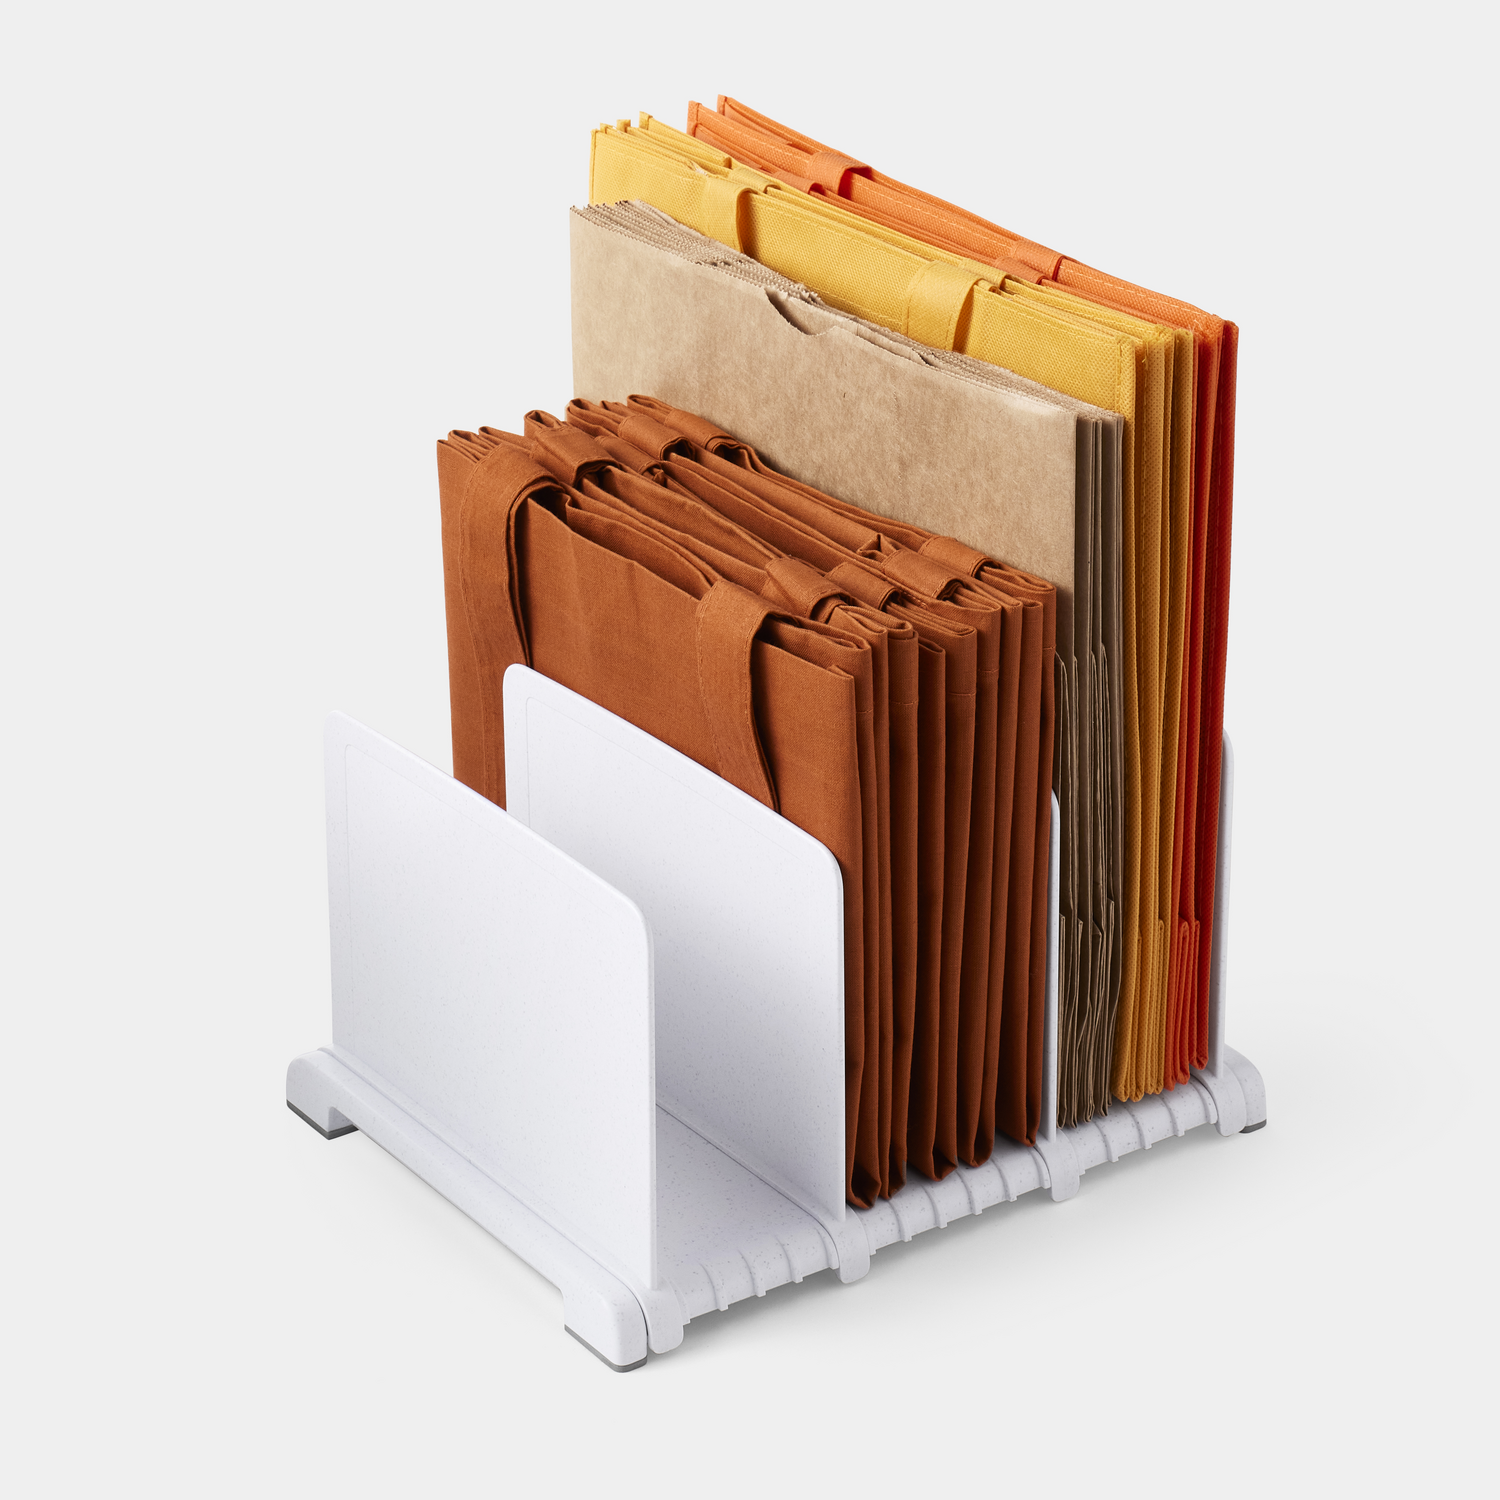 StoraBag™ Reusable Bag Organizer